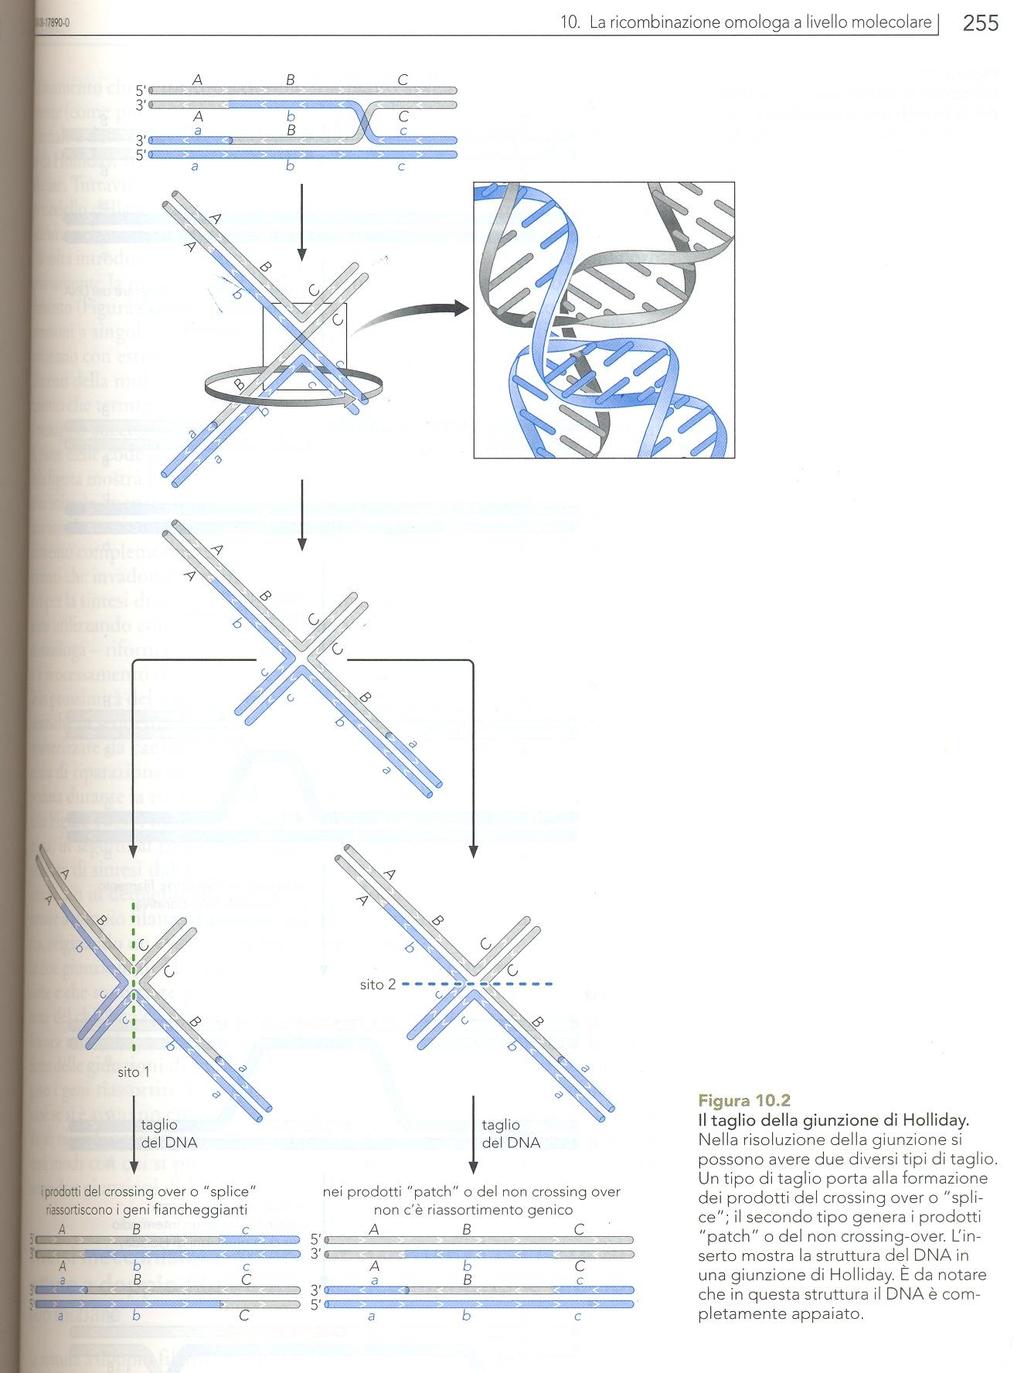 IL TAGLIO DELLA GIUNZIONE DI HOLLIDAY Per la quantità di DNA che viene scambiata tra le due molecole che